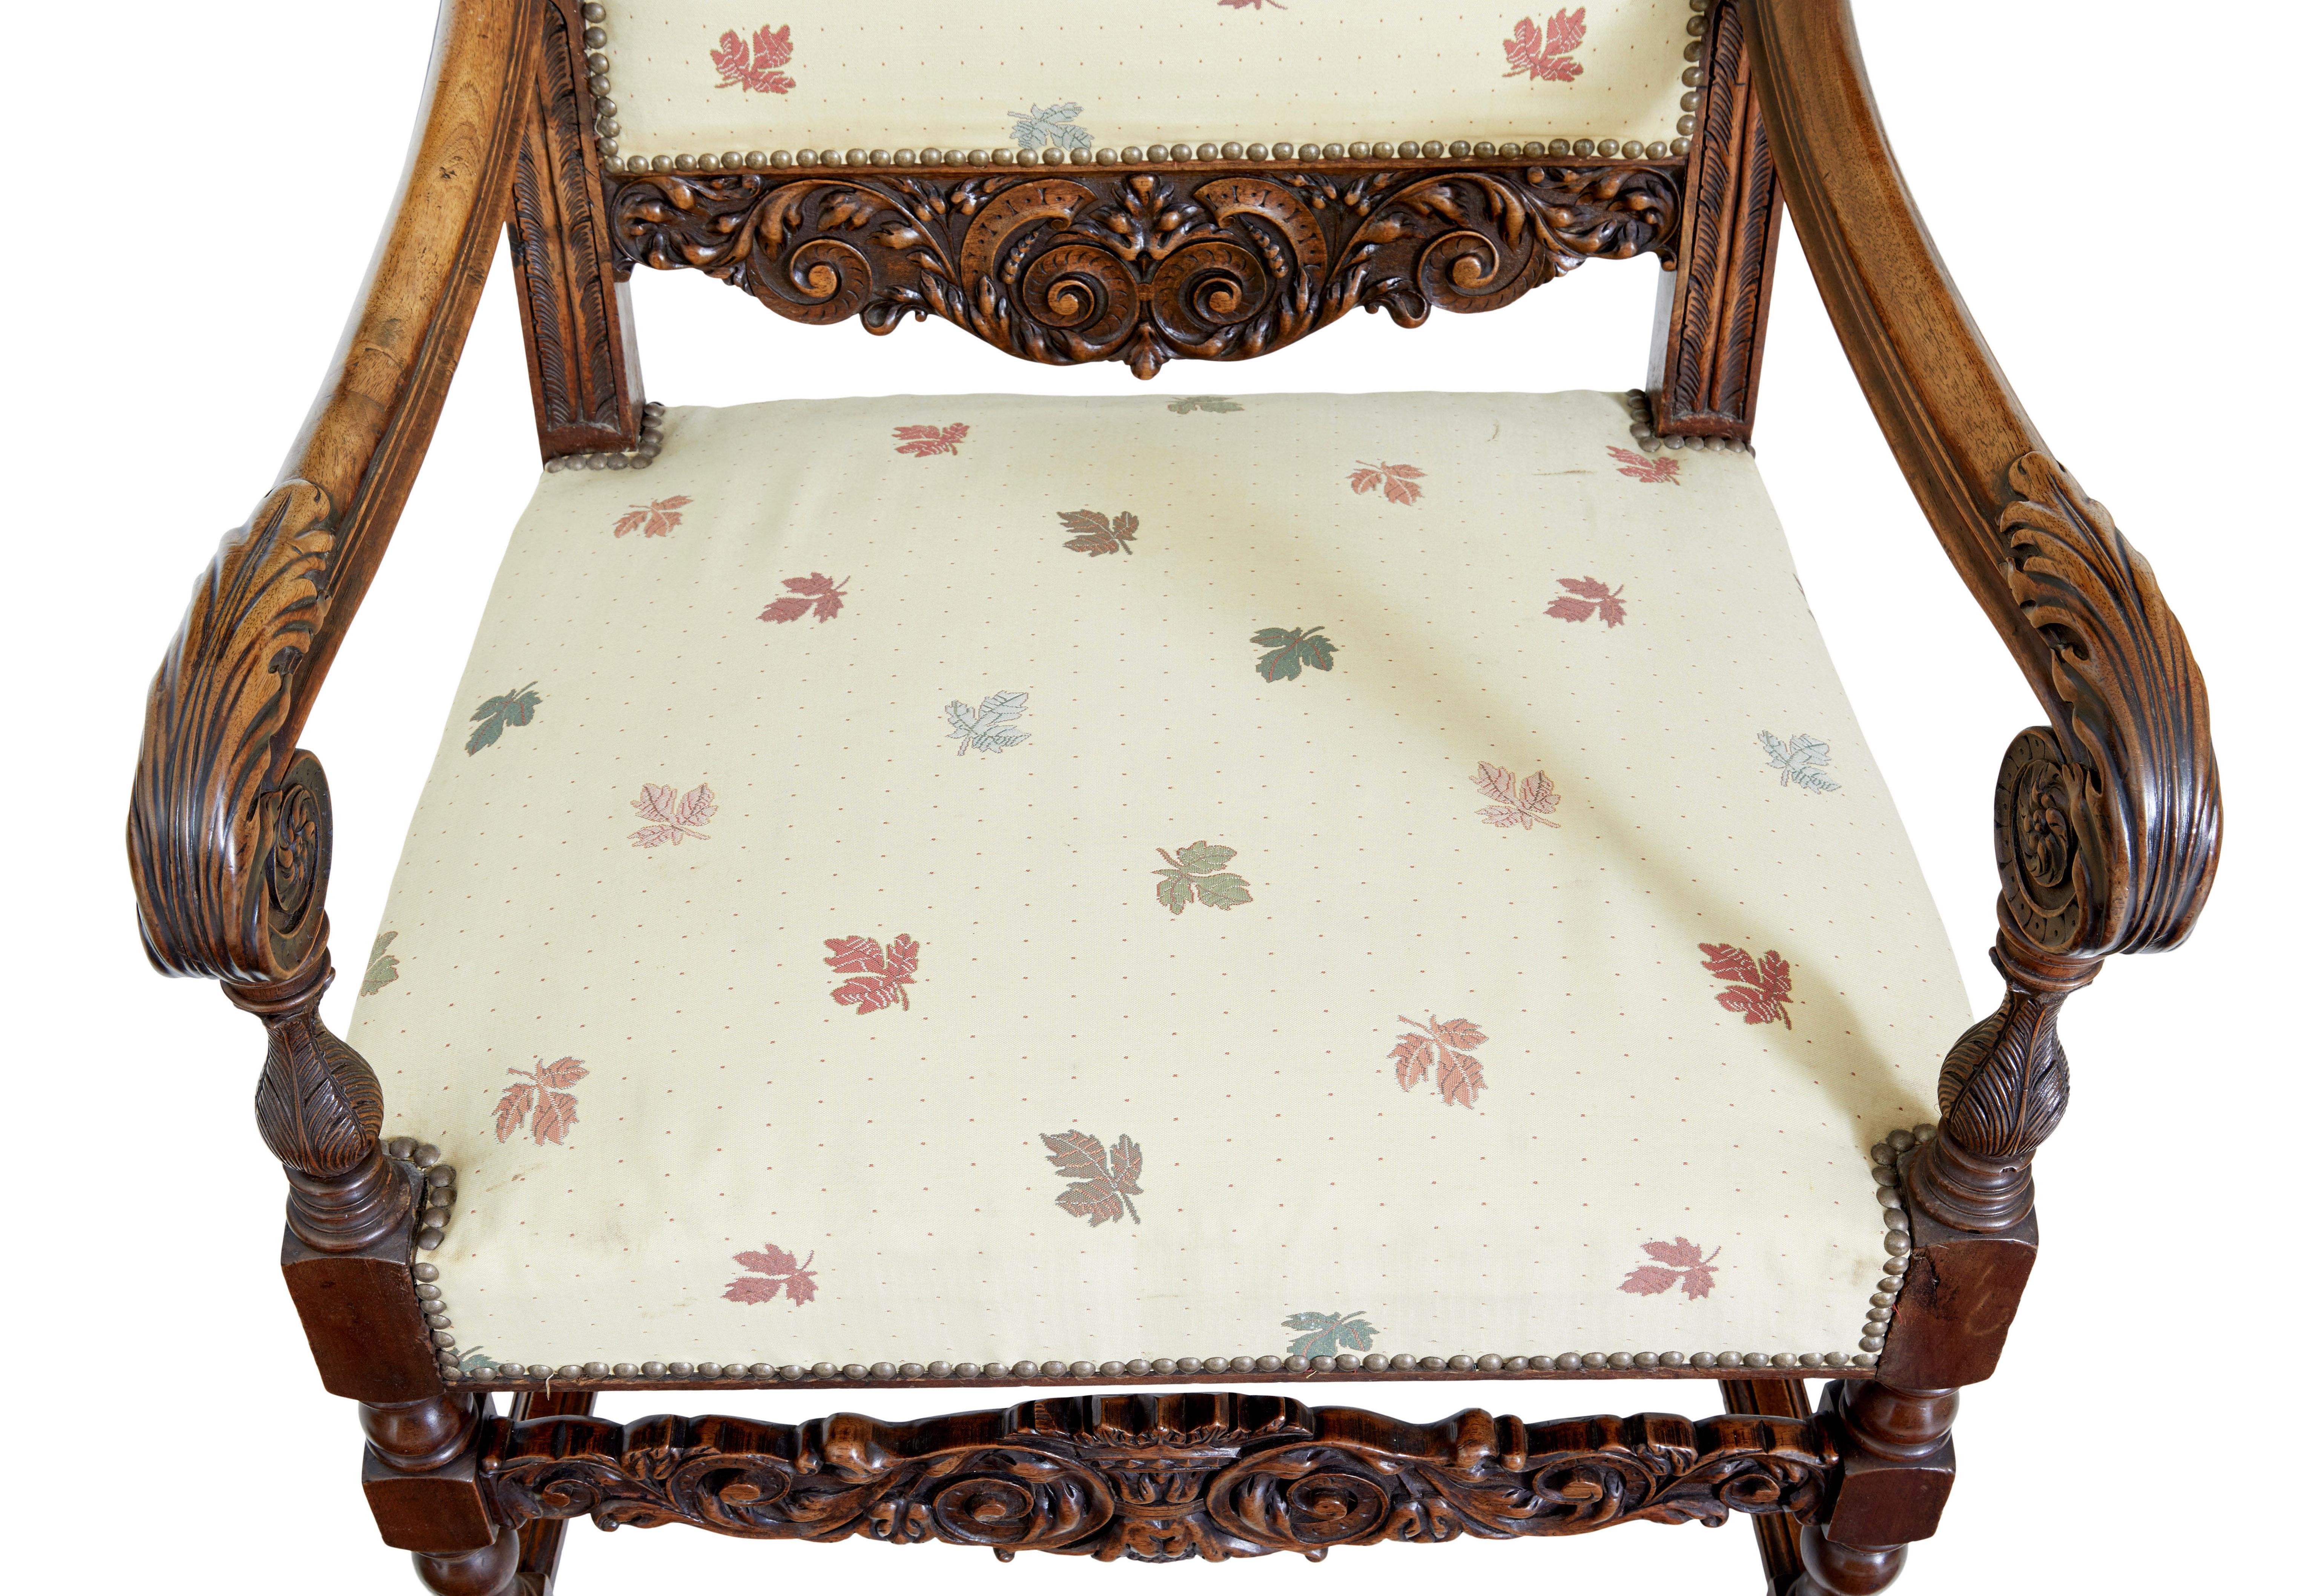 Große Sessel aus geschnitztem Nussbaumholz, 19. Jahrhundert, um 1880.

Elegantes Sesselpaar aus dem 19. Jahrhundert mit großzügigen Sitzmaßen. Wunderschön geschnitzte, geschwungene Arme mit geschnitztem Akanthusblatt und Rondellen. Geschnitzte